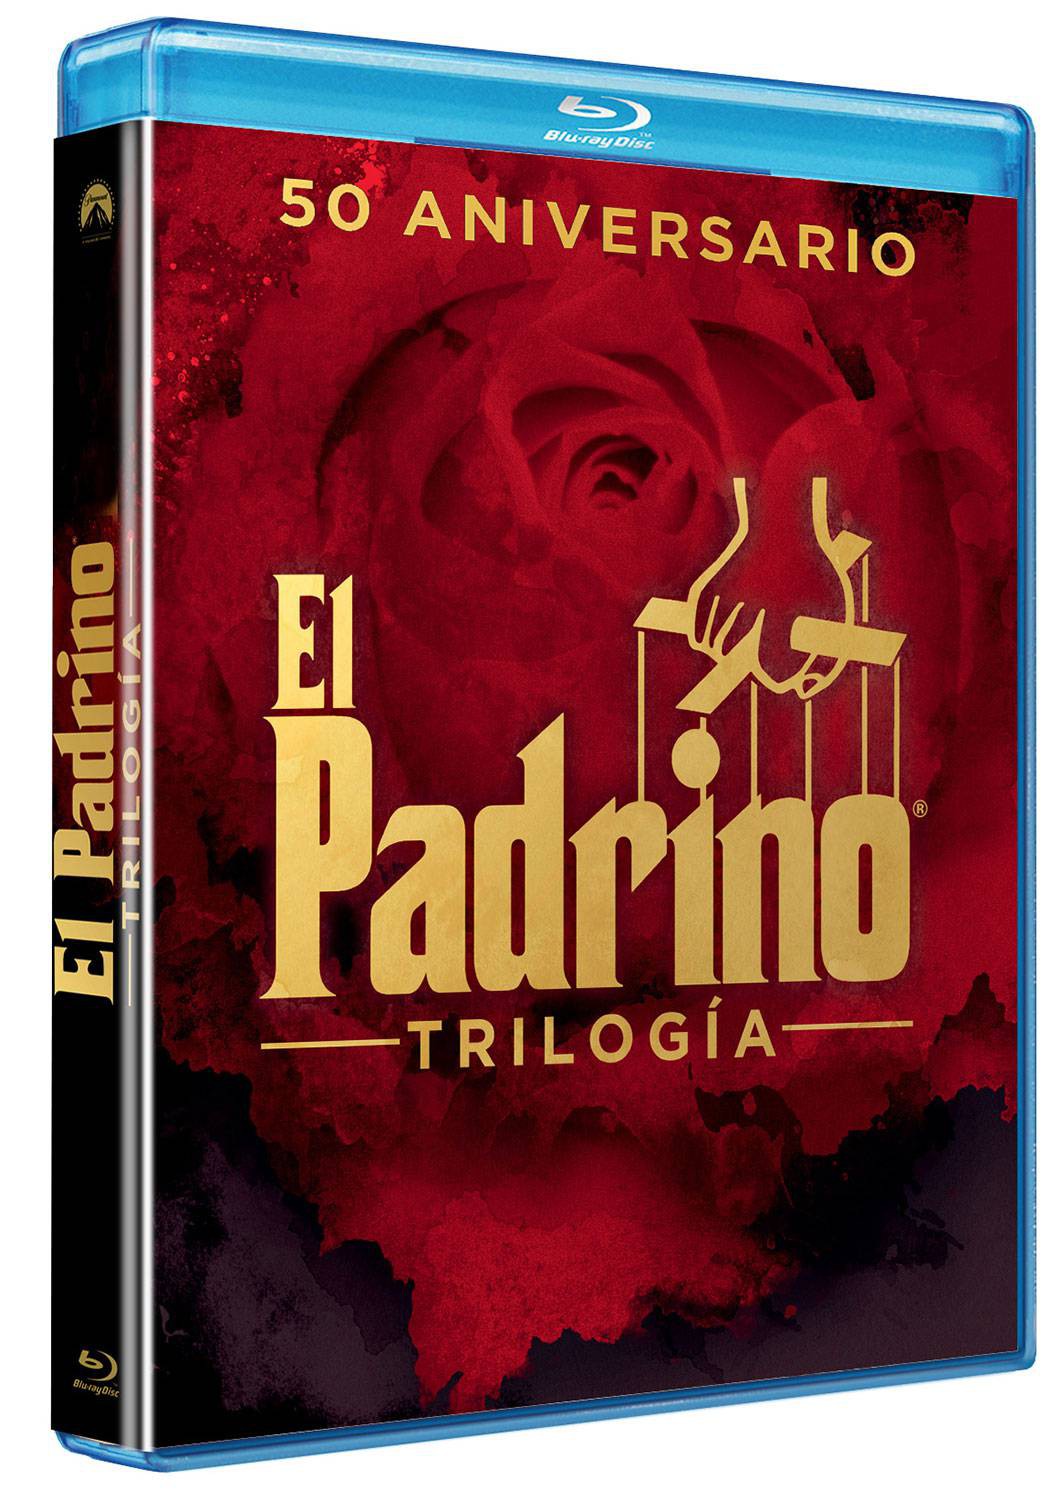 El Padrino de Mario Puzo, Epílogo: La Muerte de Michael Corleone - Edición  Metálica Ultra HD Blu-ray